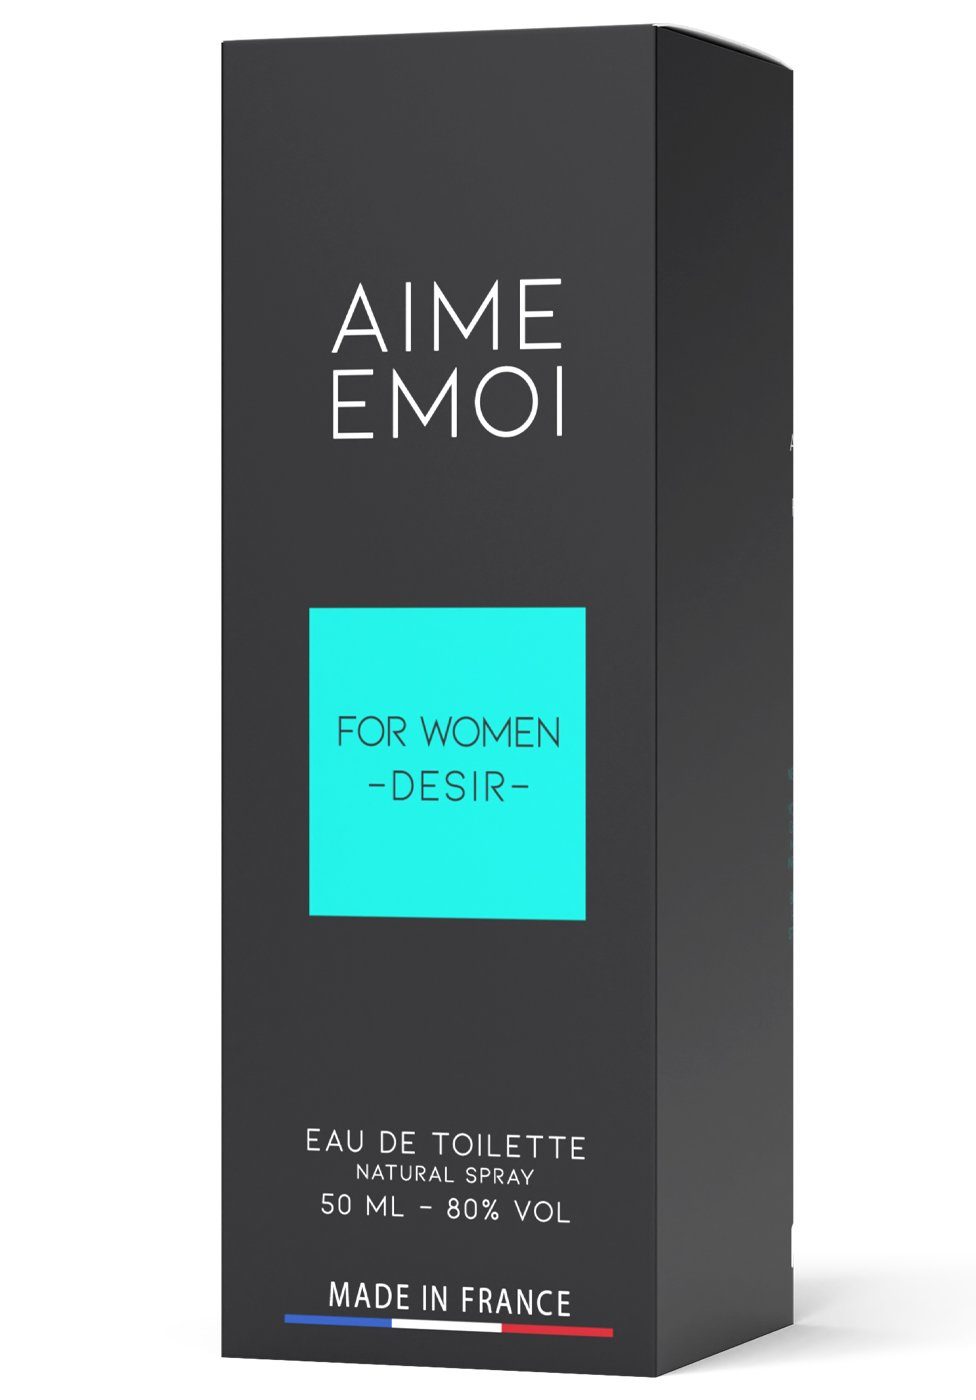 Emoi Aime de Femme Pour Eau de - Eau Toilette Parfum Ruf